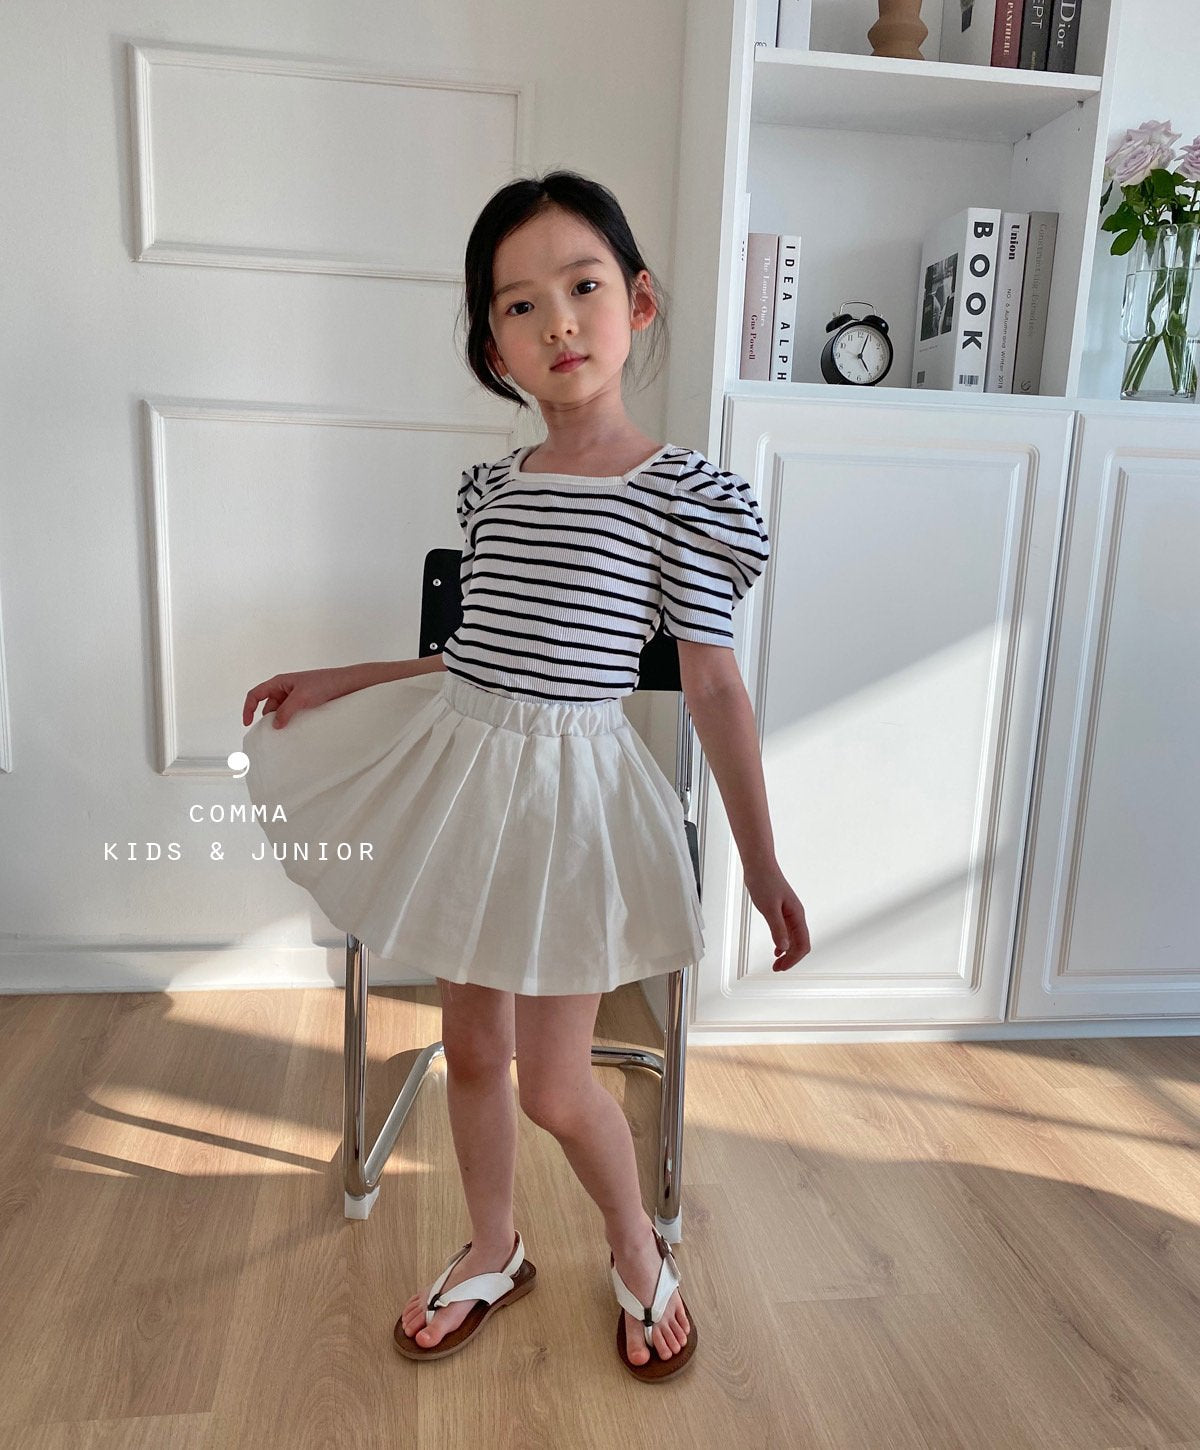 【注文後取り寄せ】韓国子供服 Comma 女の子 子供服  リネンフレアミニスカート 2色 90-150サイズ